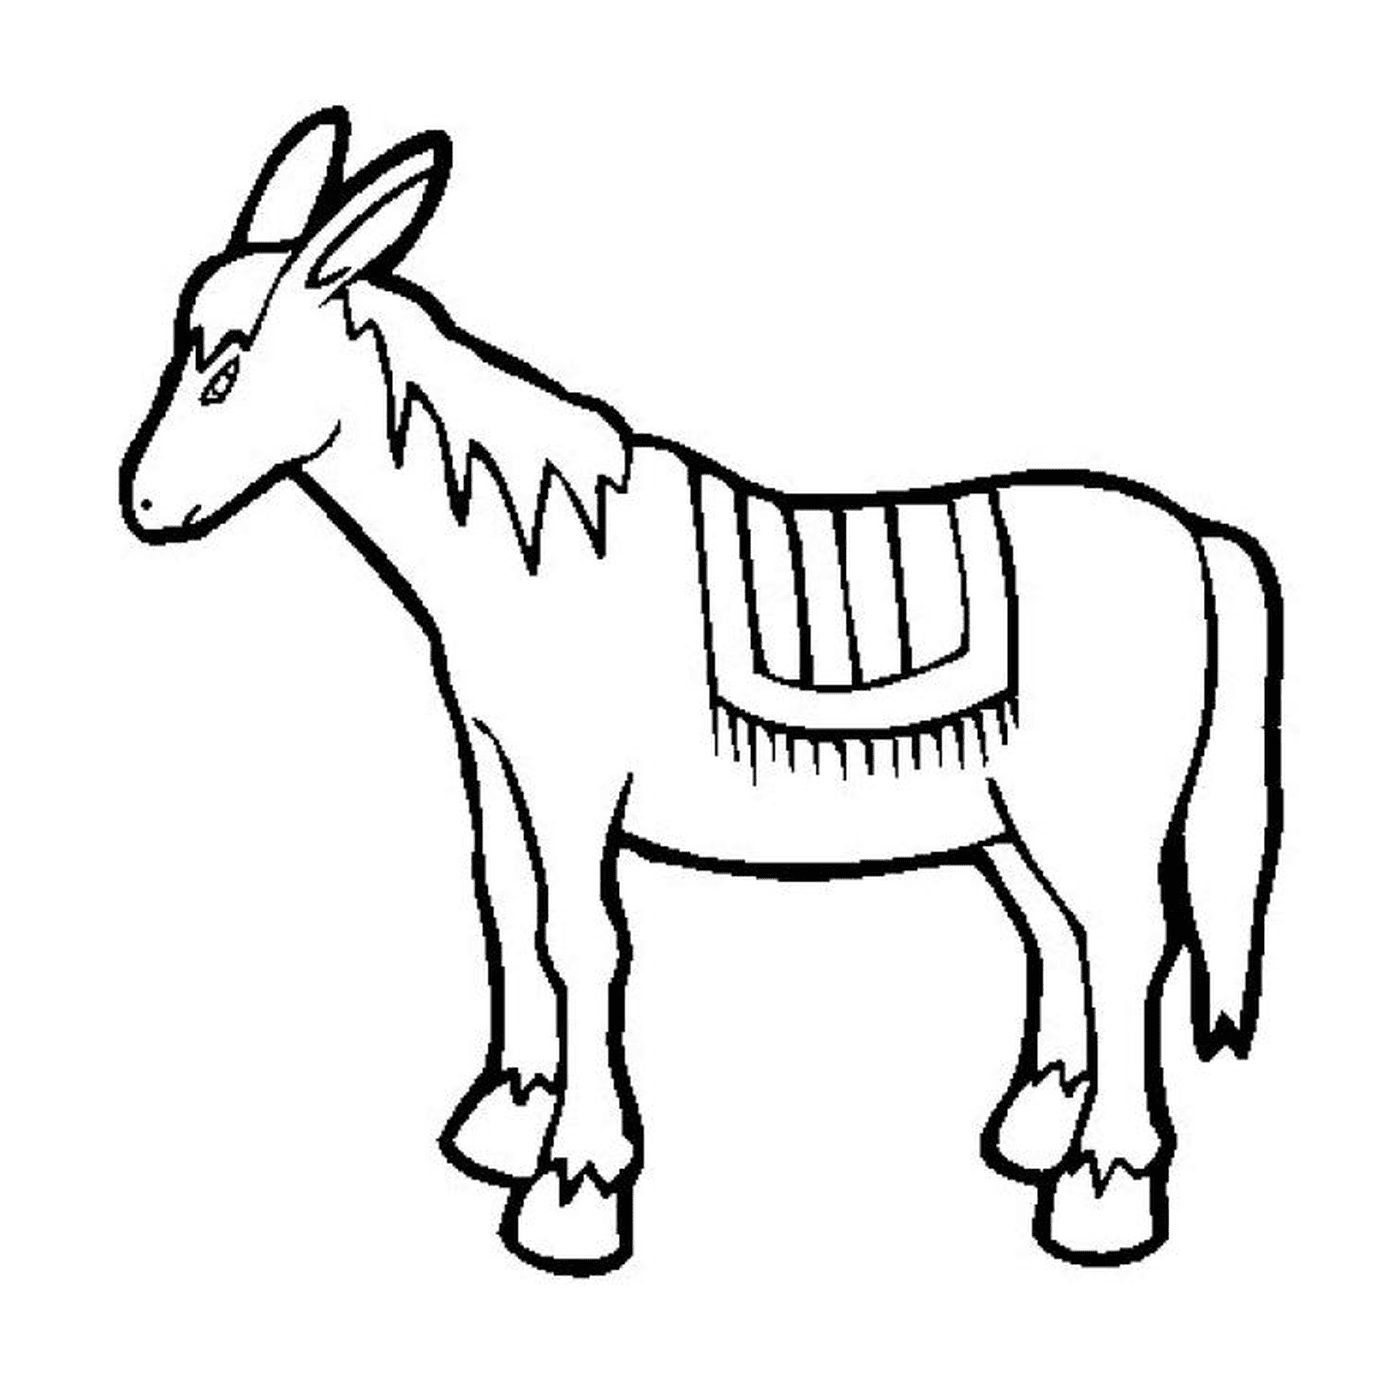  Uma imagem de um animal desenhado 